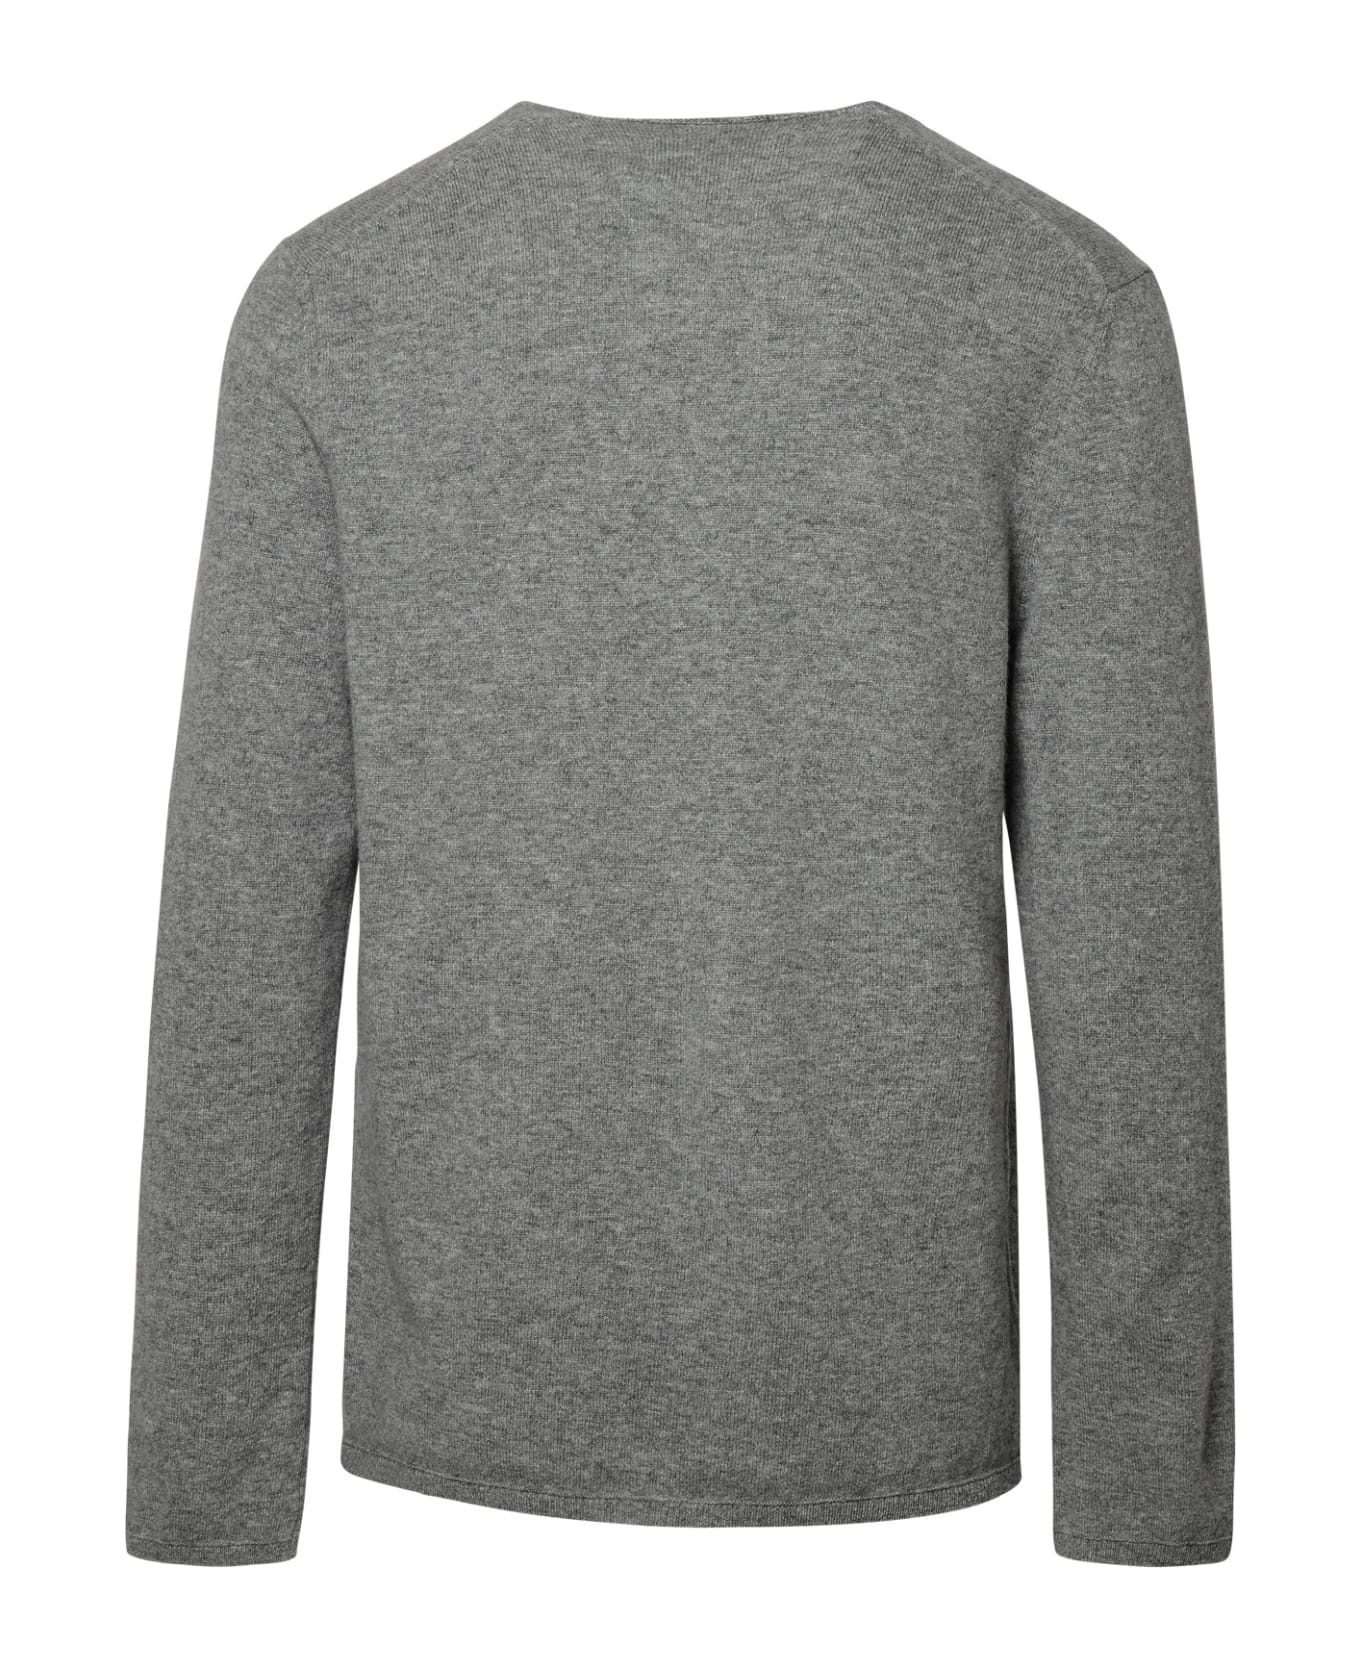 Comme des Garçons Shirt Grey Wool Sweater - Grey フリース